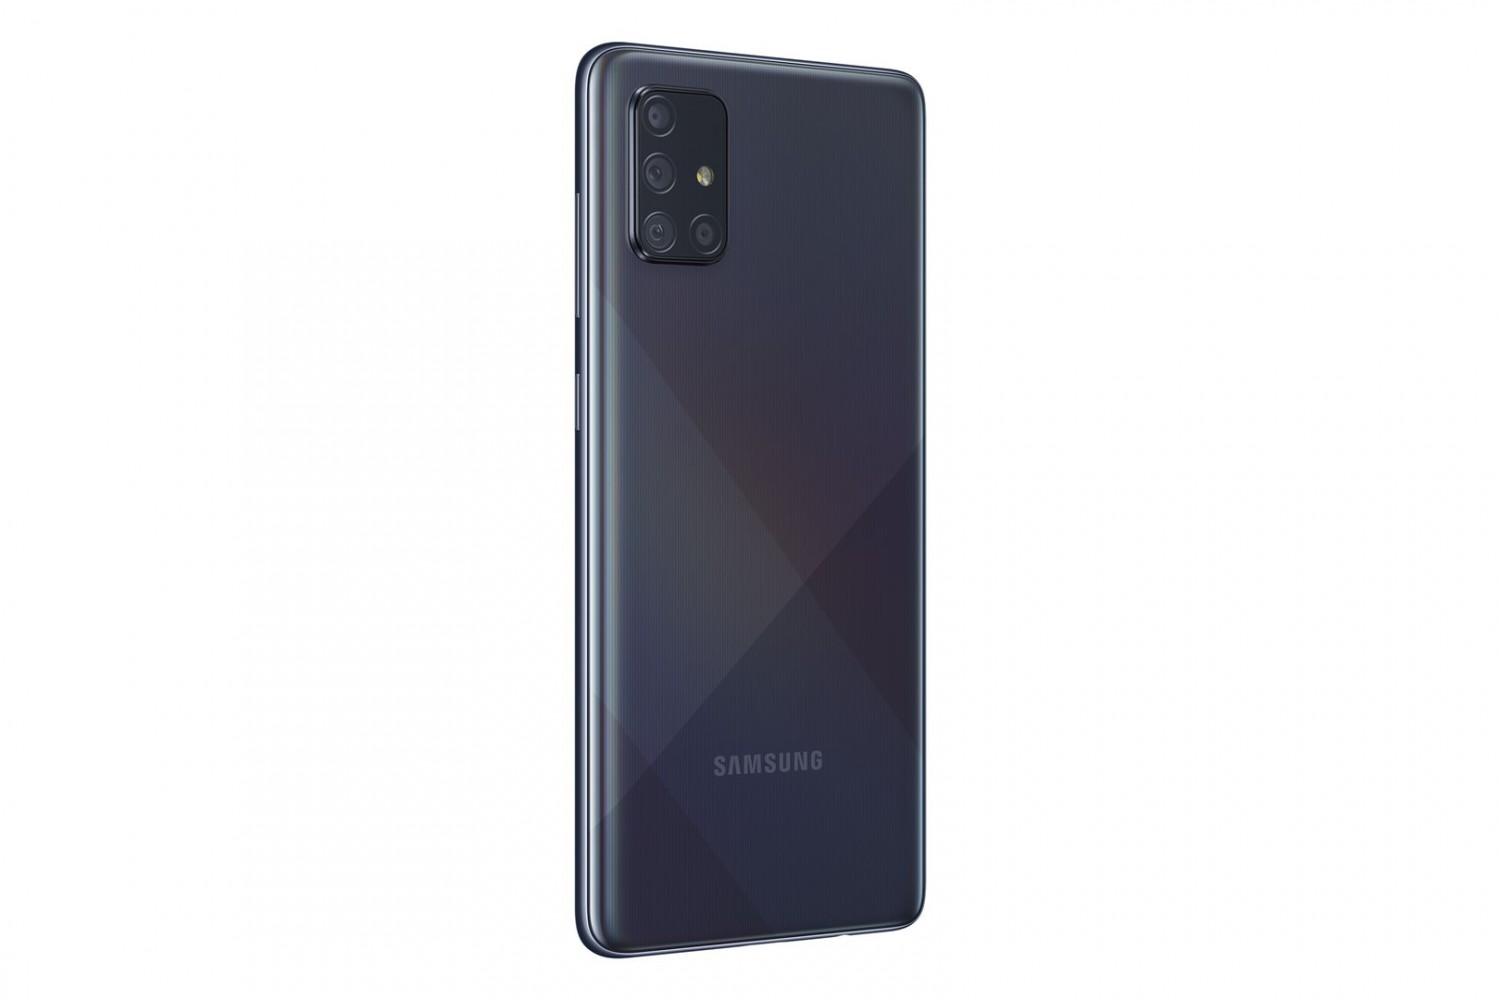 Samsung Galaxy A71 SM-A715F 6GB/128GB černá